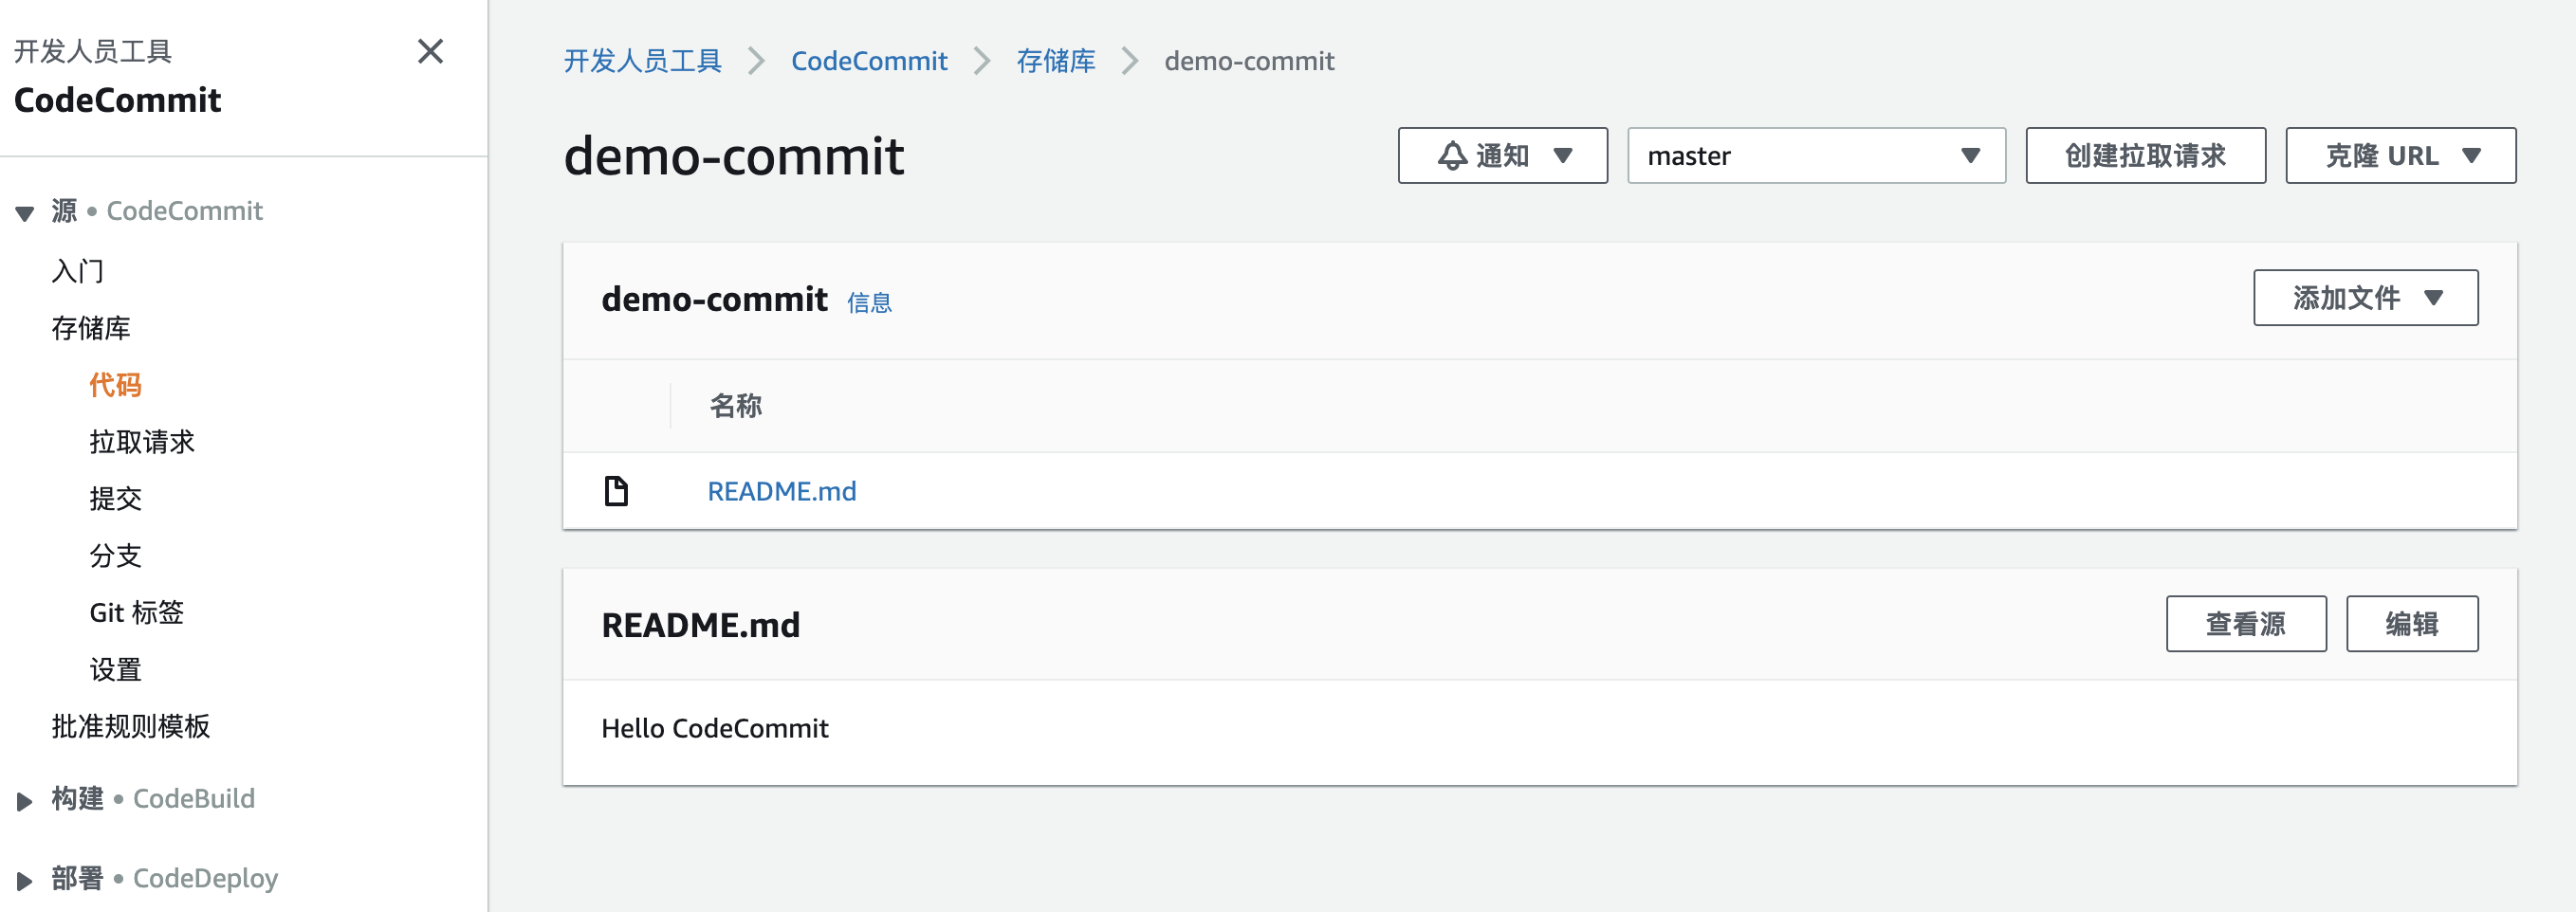 AWS 创建CodeCommit【托管型私有 Git 存储库】第9张